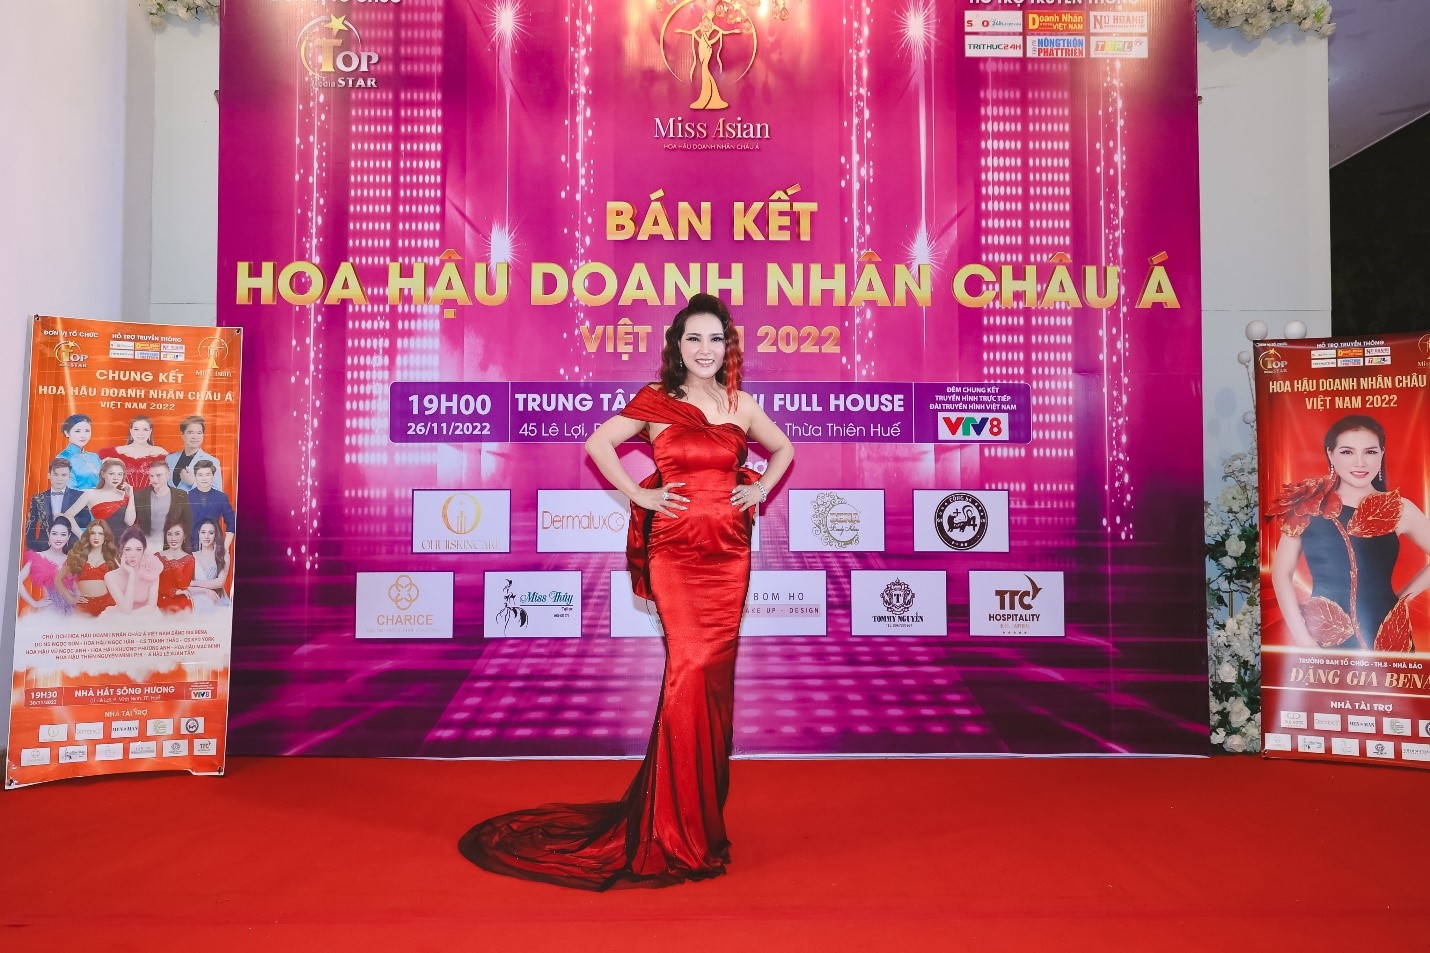 25 thí sinh vào chung kết Hoa hậu Doanh nhân châu Á Việt Nam 2022 - 2